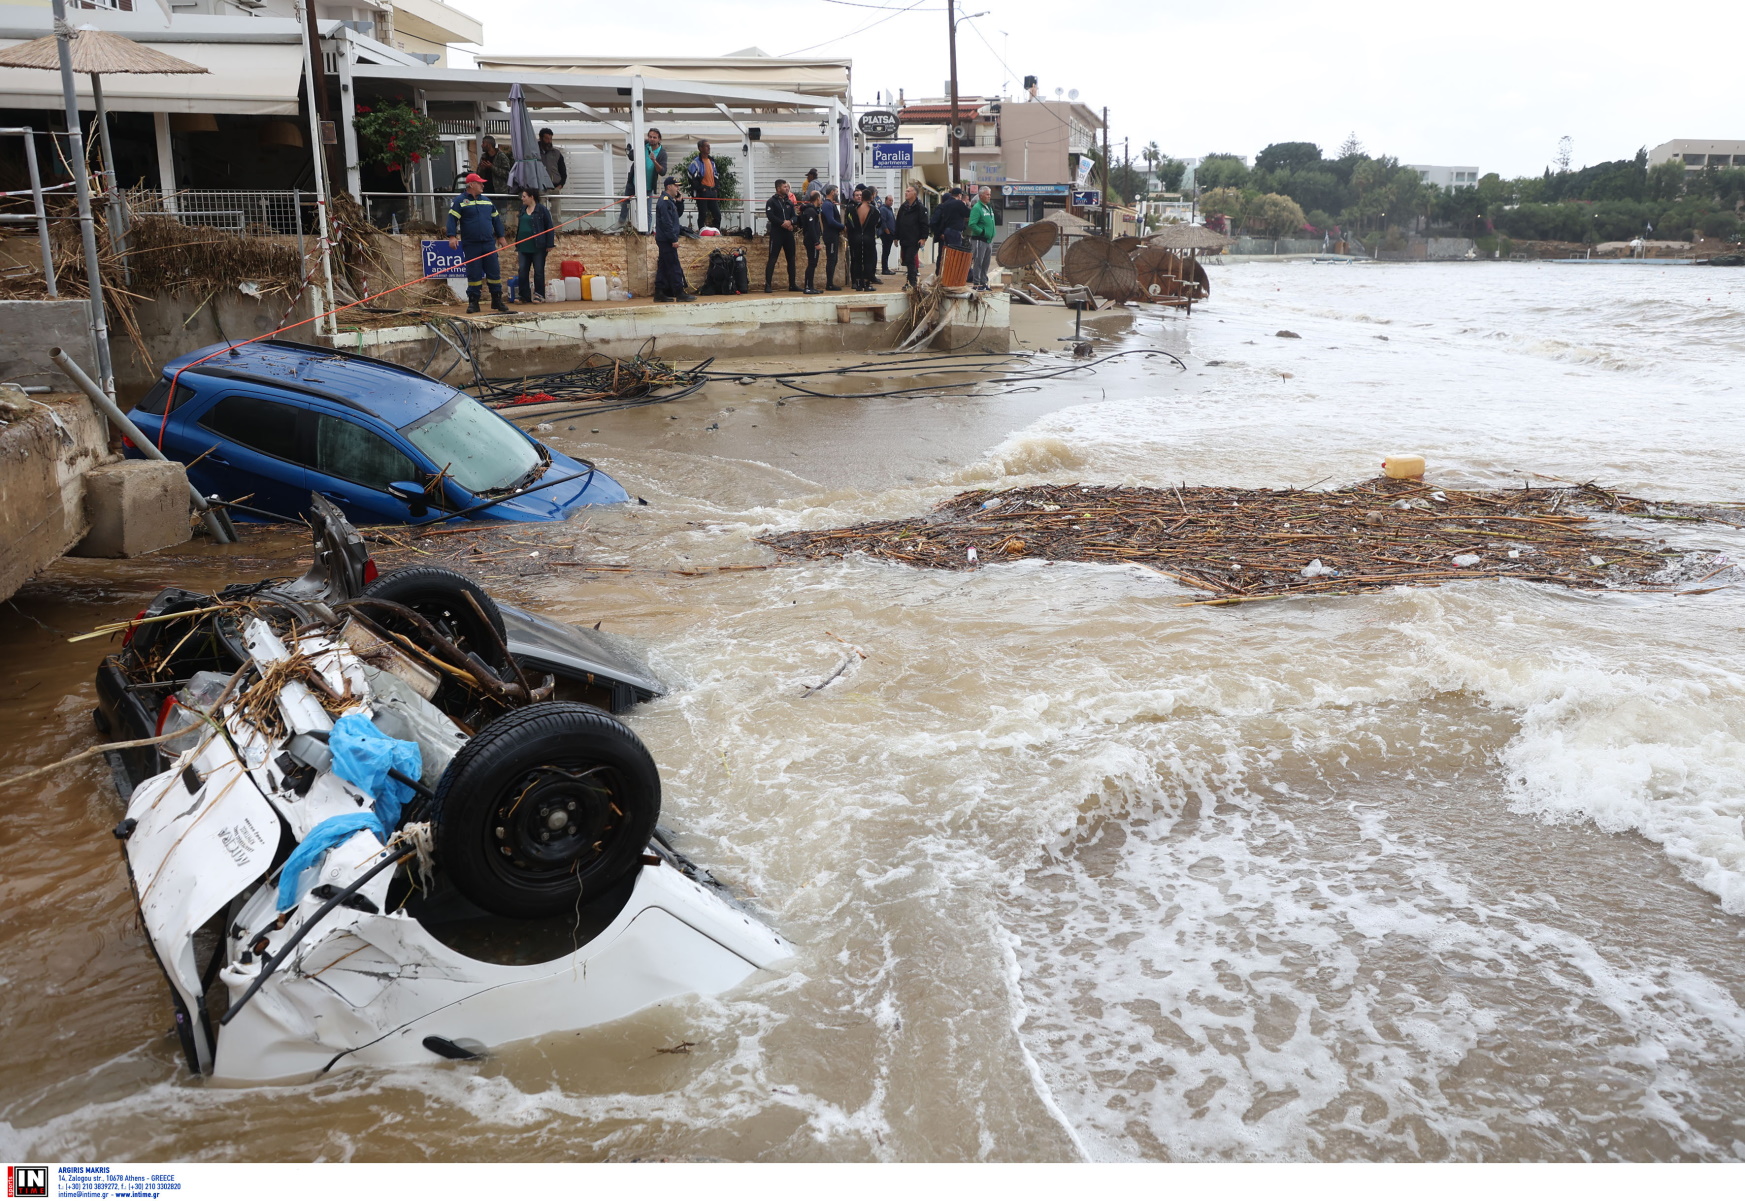 ΕΡΓΑΝΗ: Ανοίγει η πλατφόρμα για αιτήσεις αναστολής για πλημμυροπαθείς στην Κρήτη